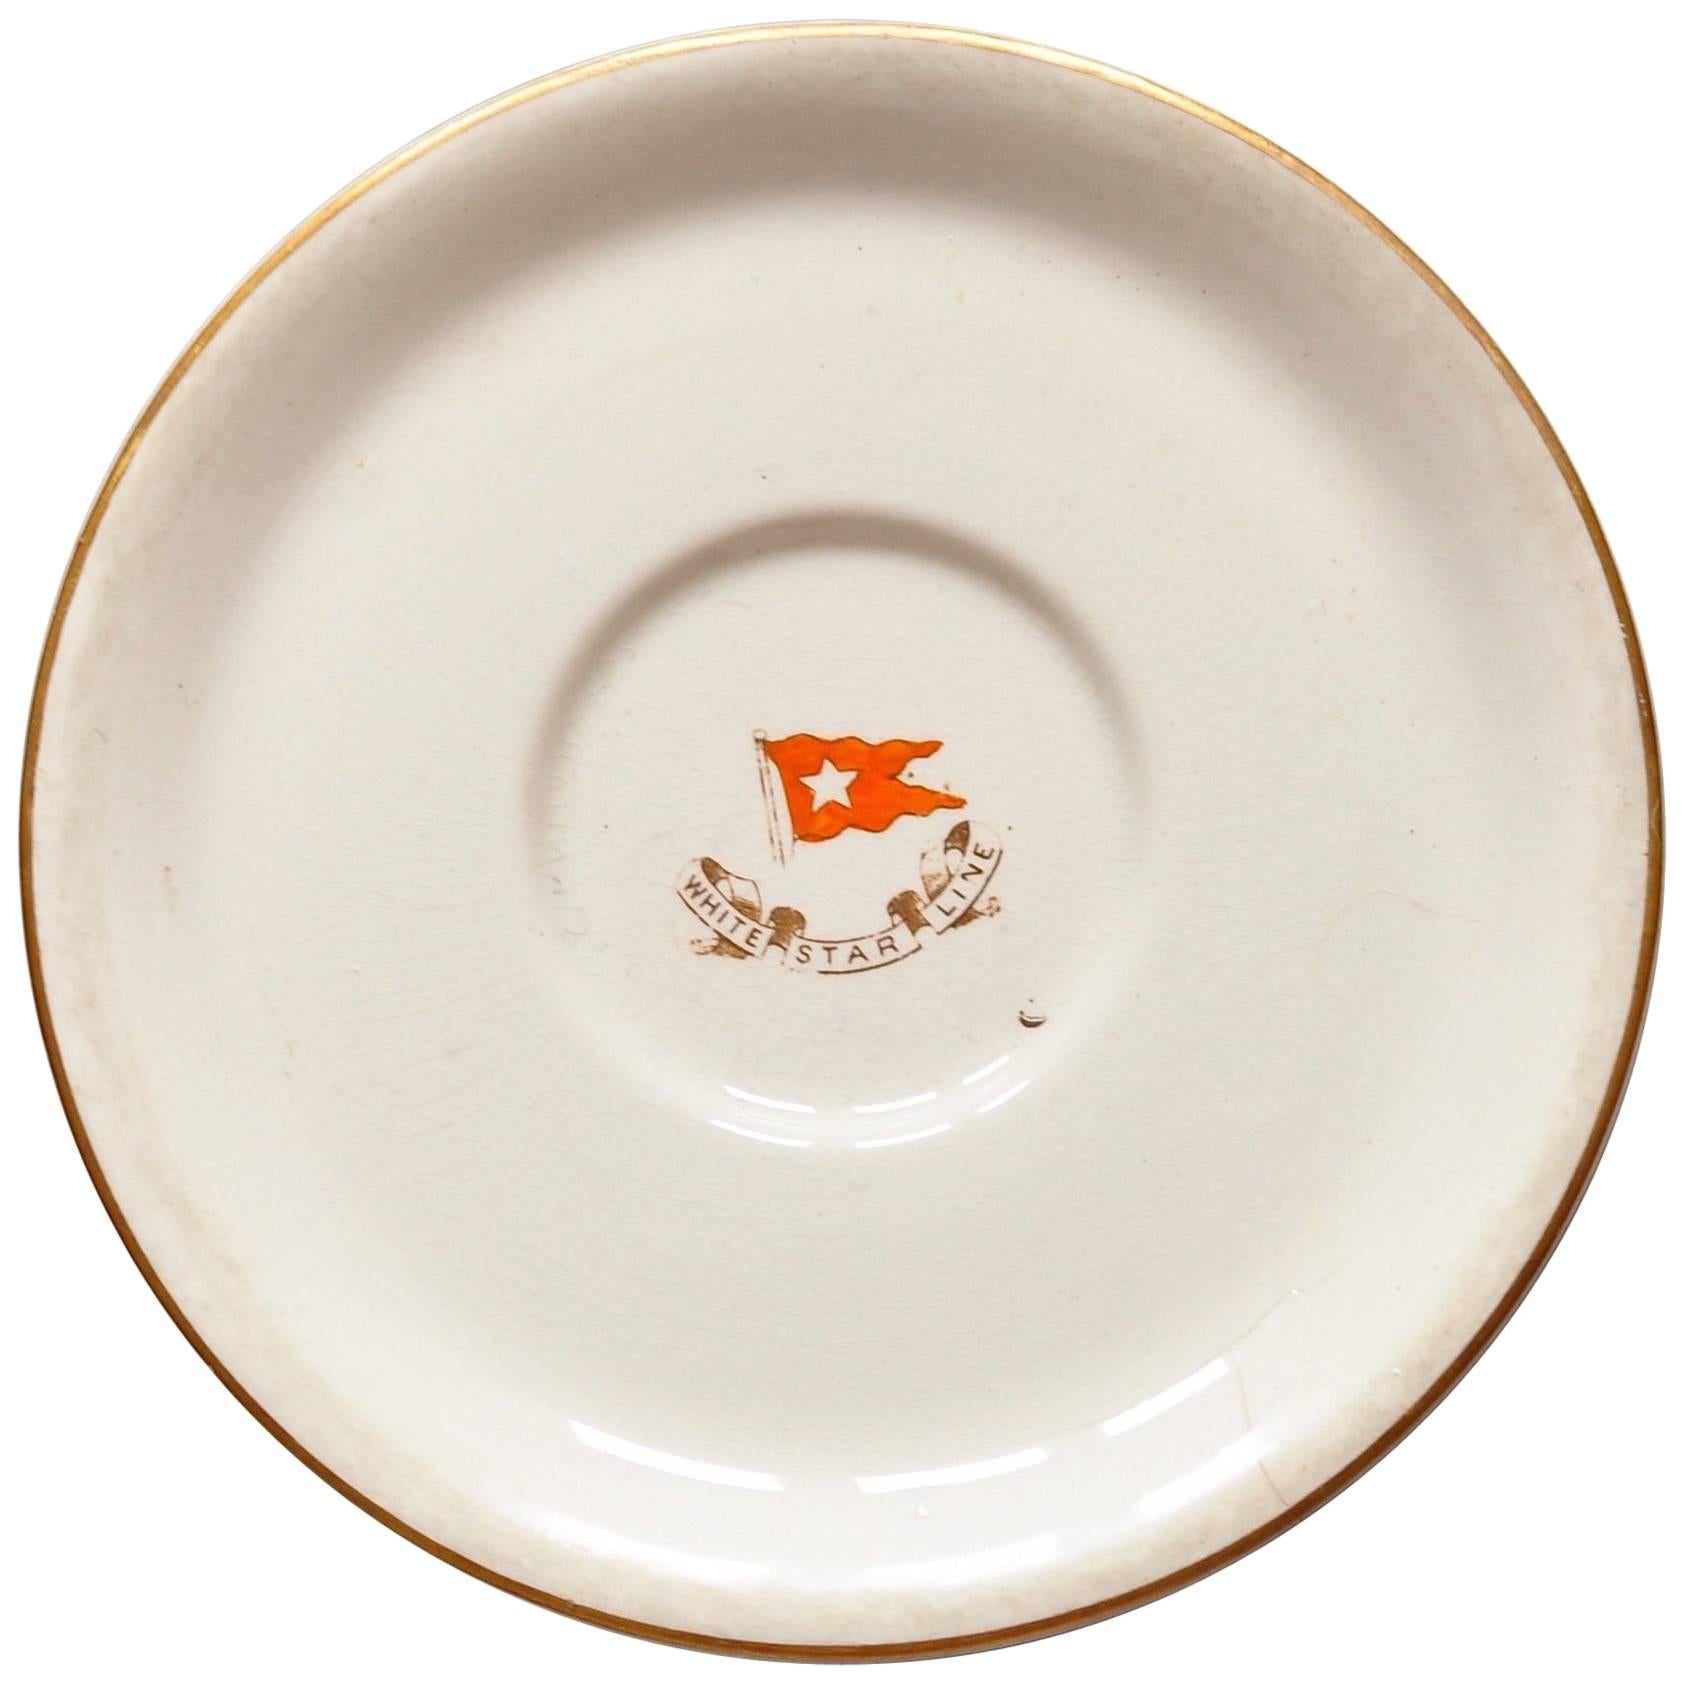 Original White Star Line Gilt Porcelain Plate